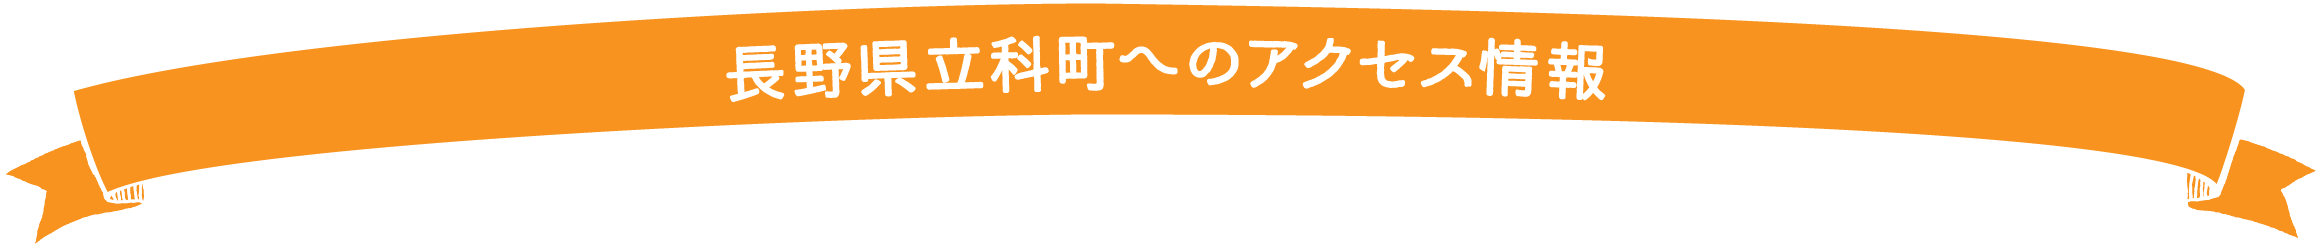 長野県立科町へのアクセス情報